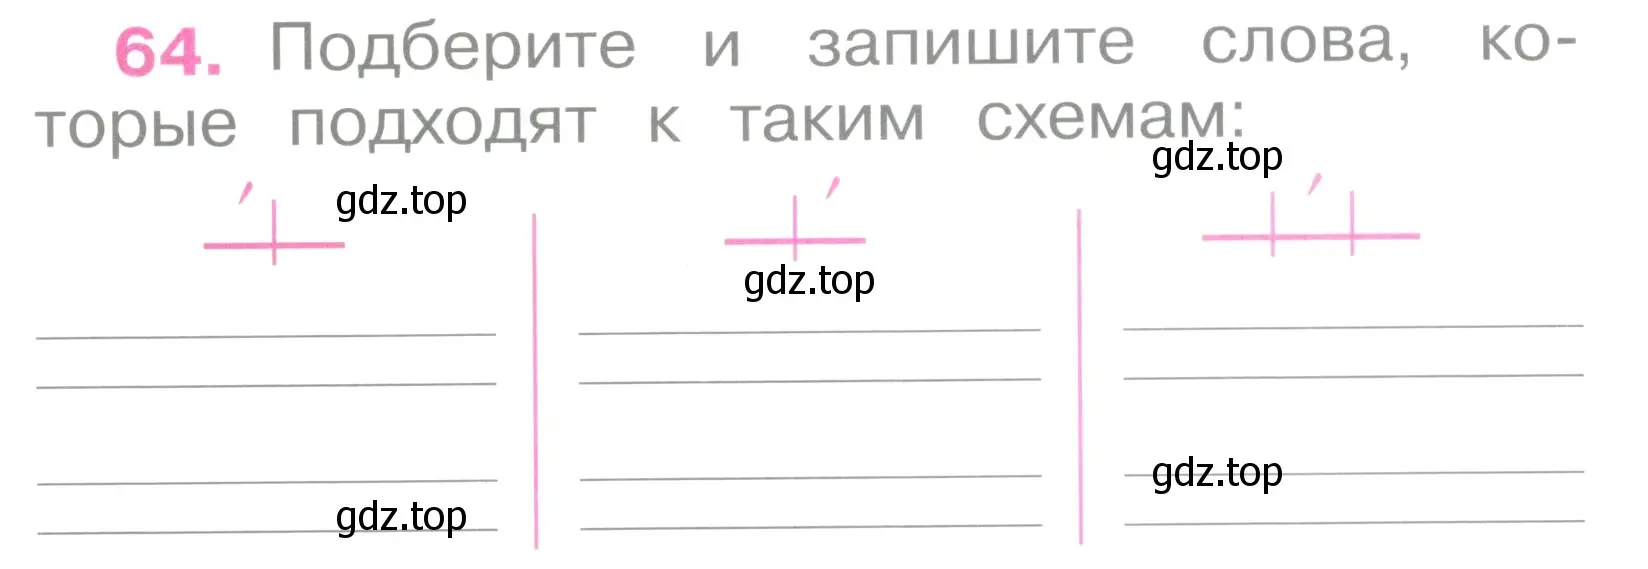 Условие номер 64 (страница 30) гдз по русскому языку 2 класс Канакина, рабочая тетрадь 1 часть